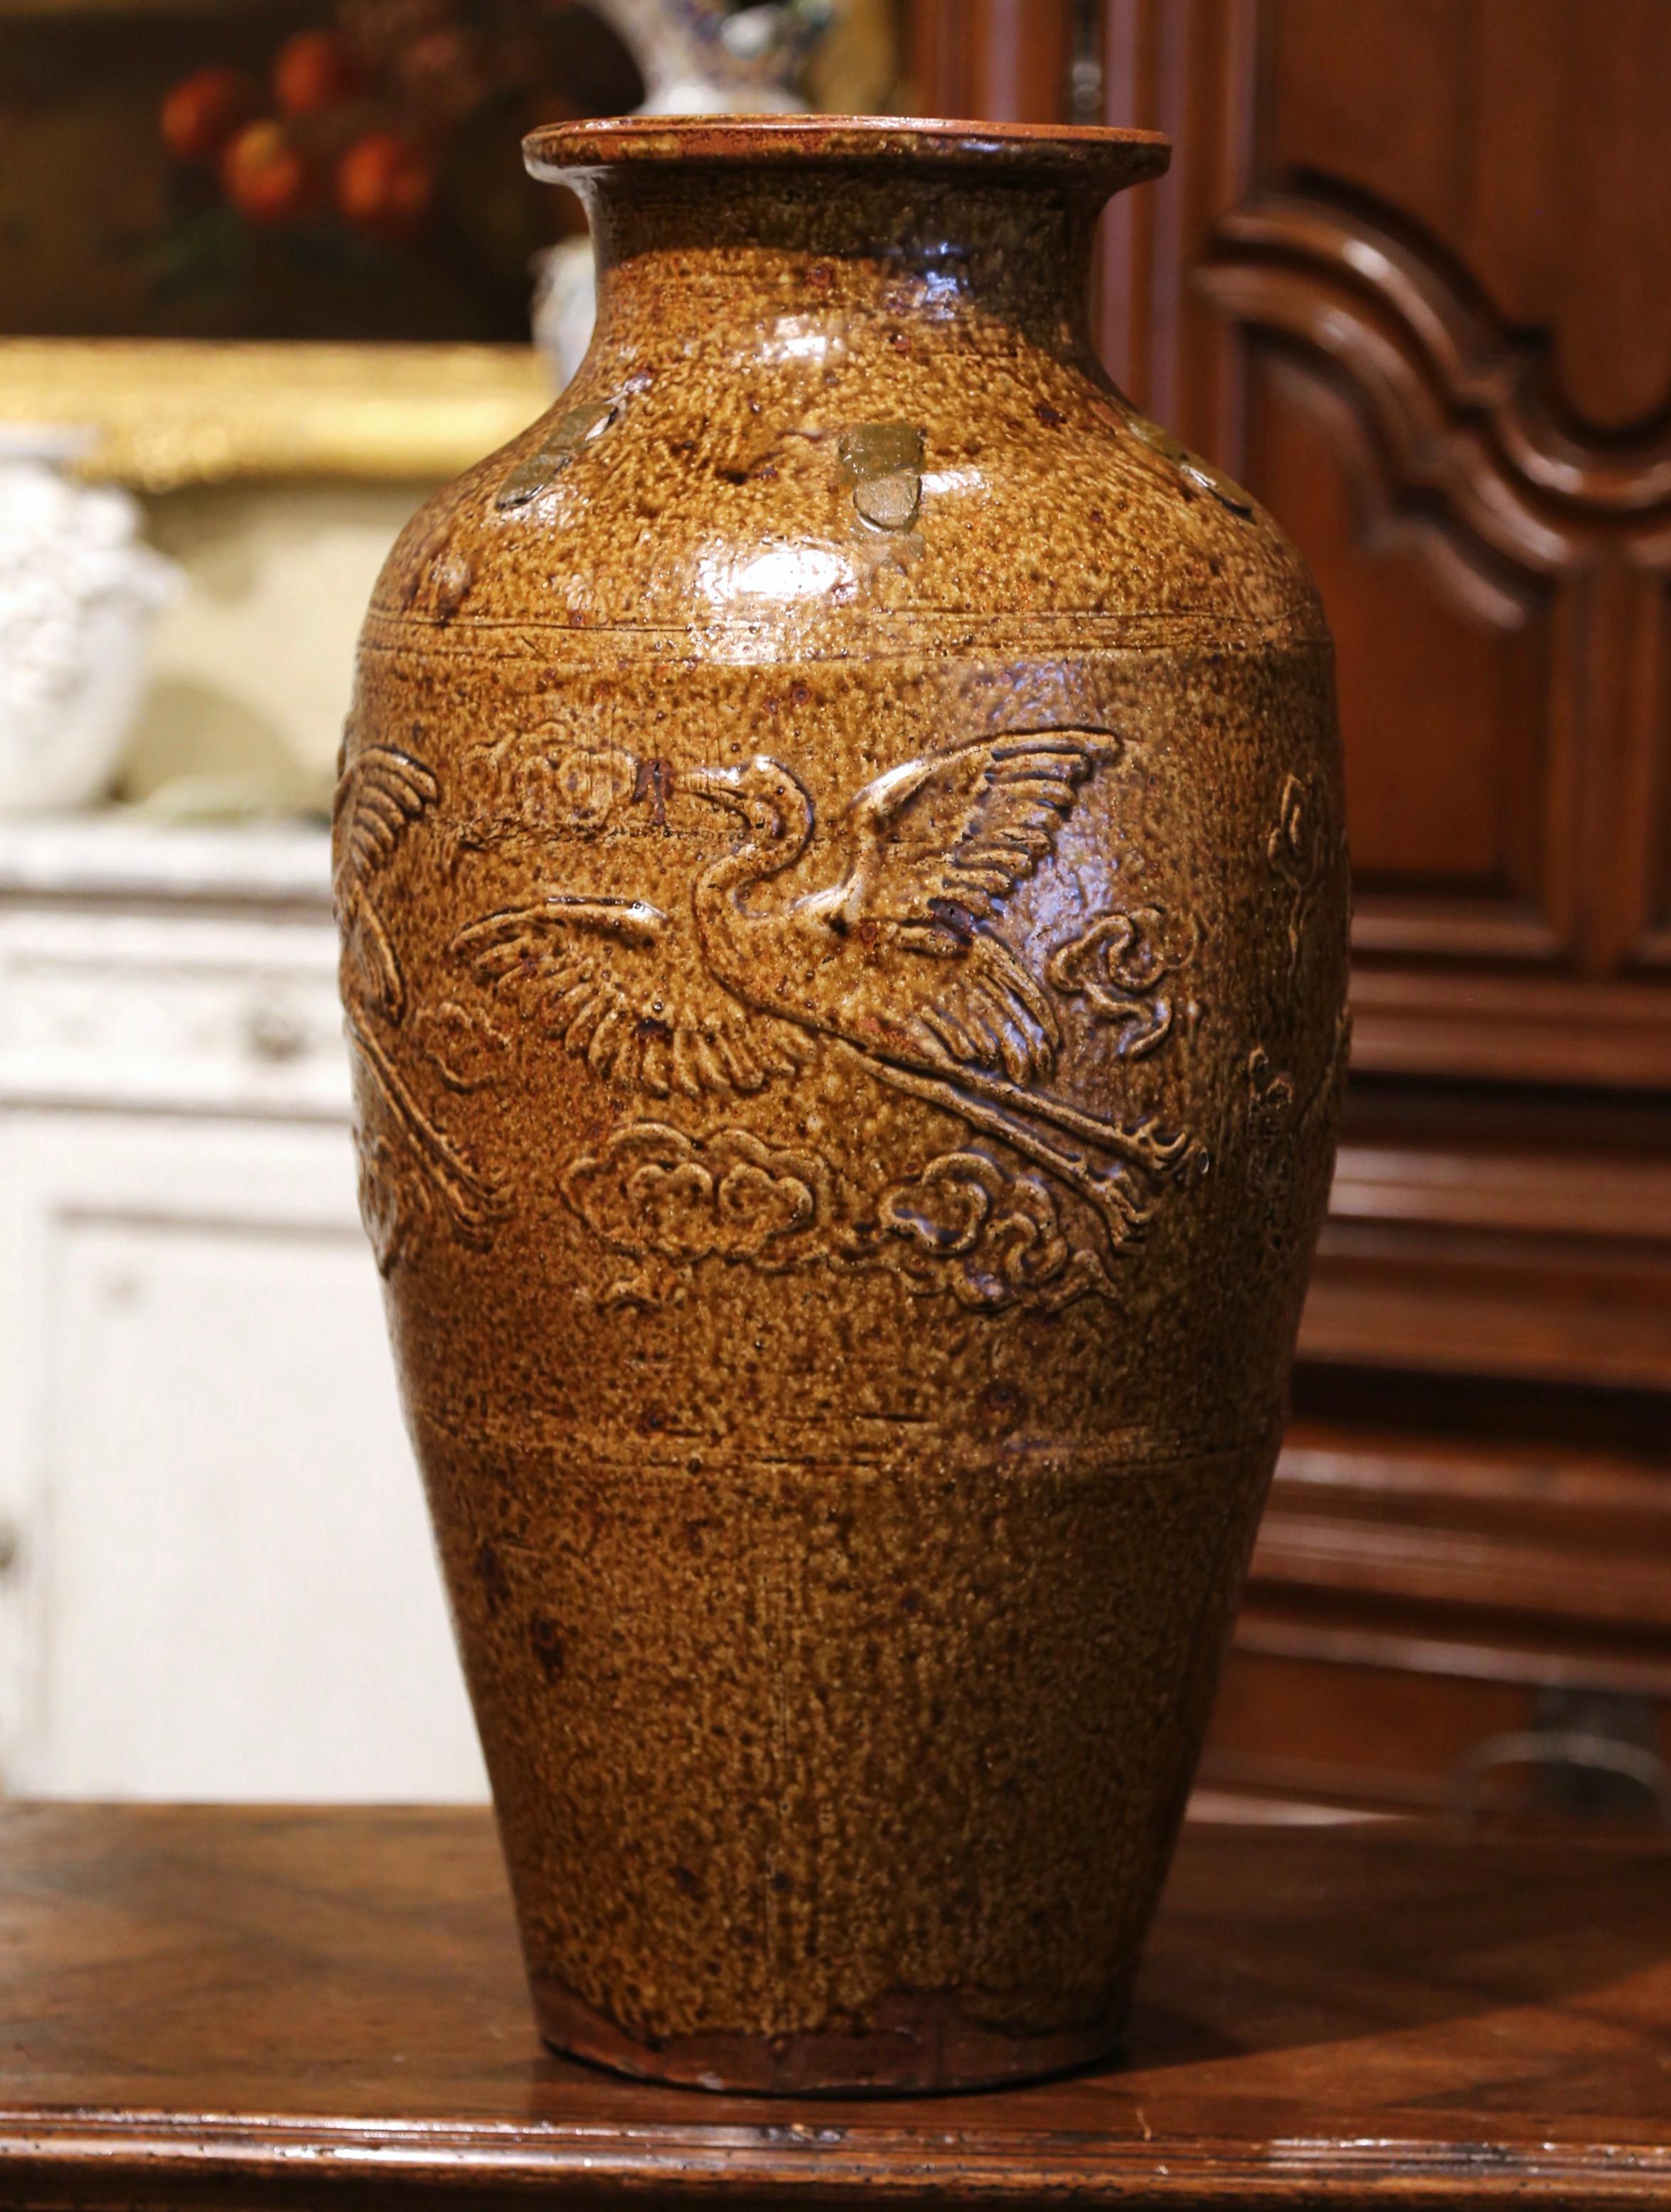 Décorez les armoires de cuisine avec ce grand pot d'huile d'olive en poterie ancienne. Créée en Espagne vers 1880 et fabriquée en terre cuite, la jarre est de forme ronde et décorée de motifs d'oiseaux en haut relief. Le grand pot est en excellent